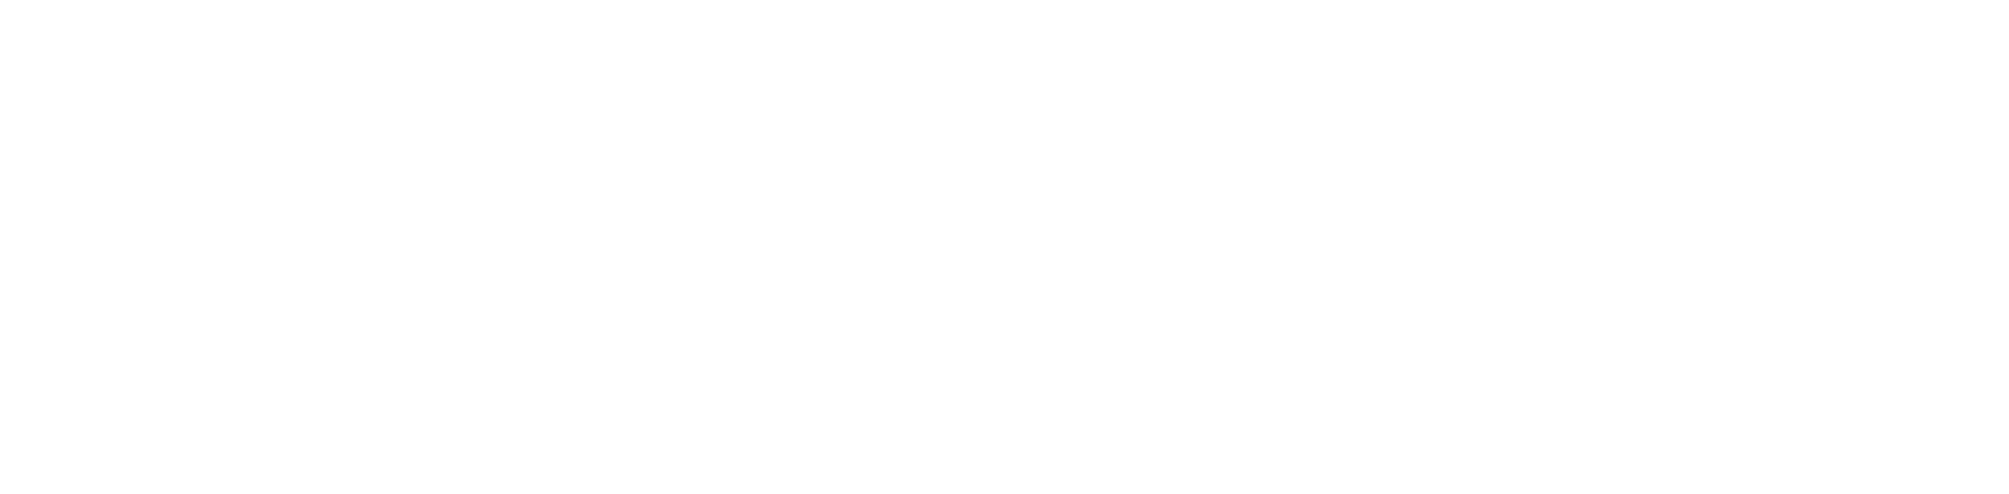 OceanLearningLabsLogoSubTextWhite (1)